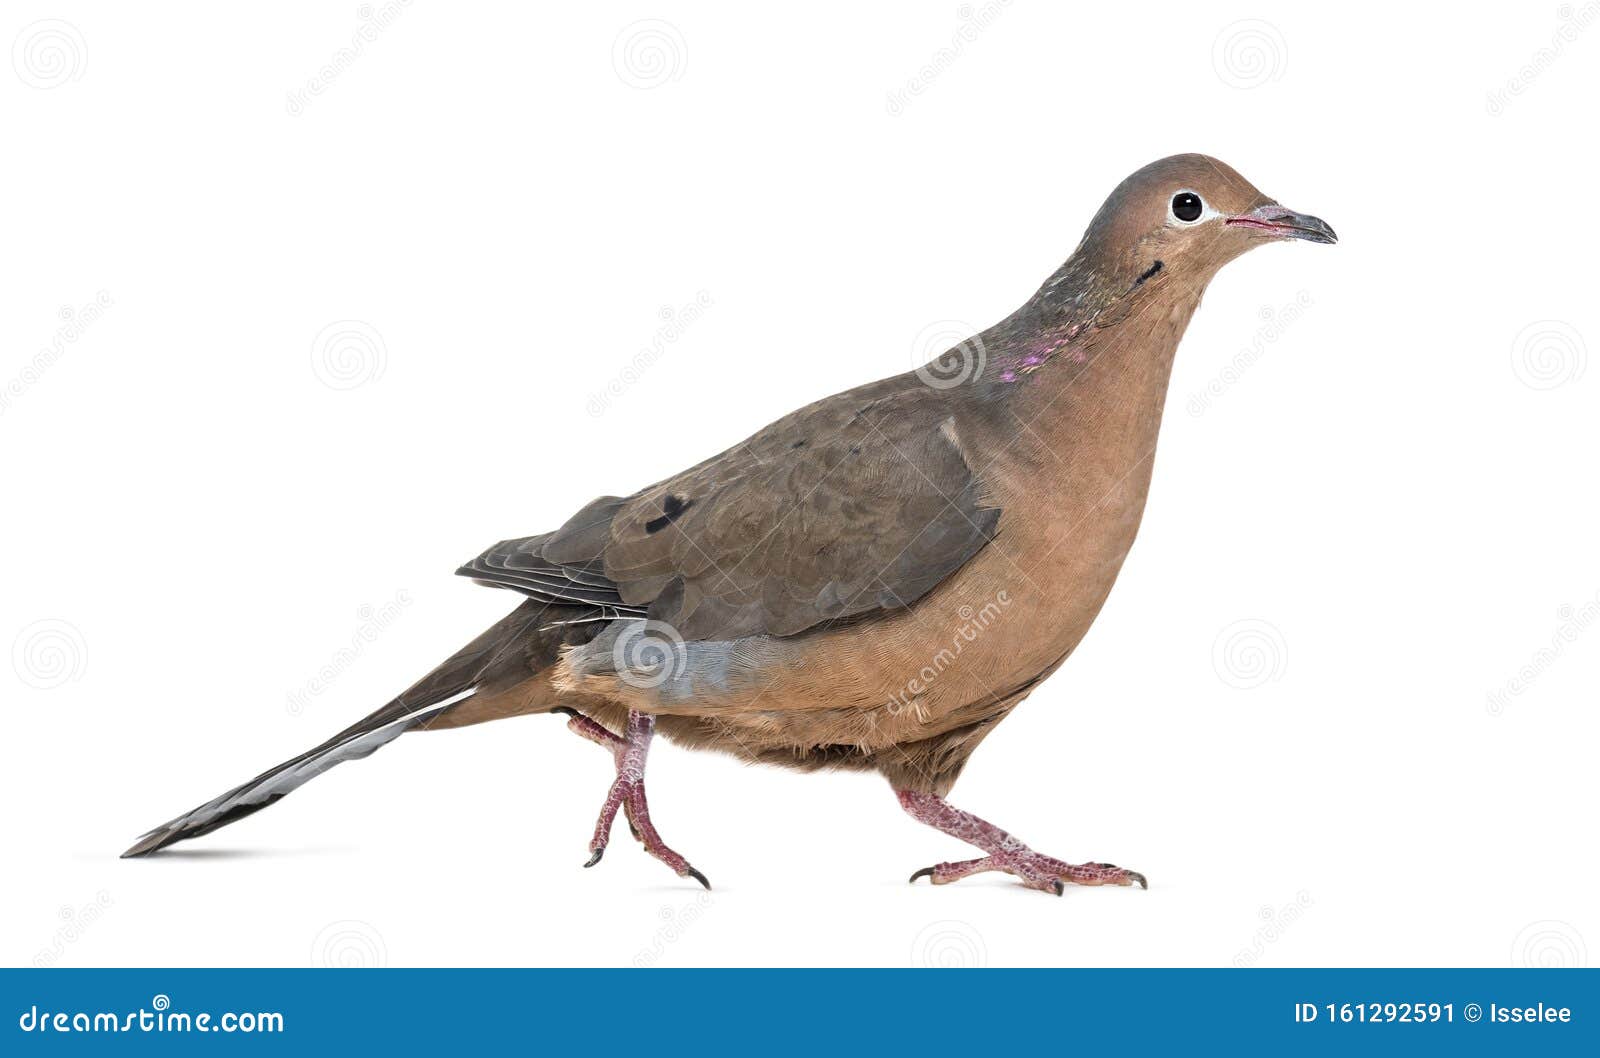 socorro dove, zenaida graysoni, is a dove walking